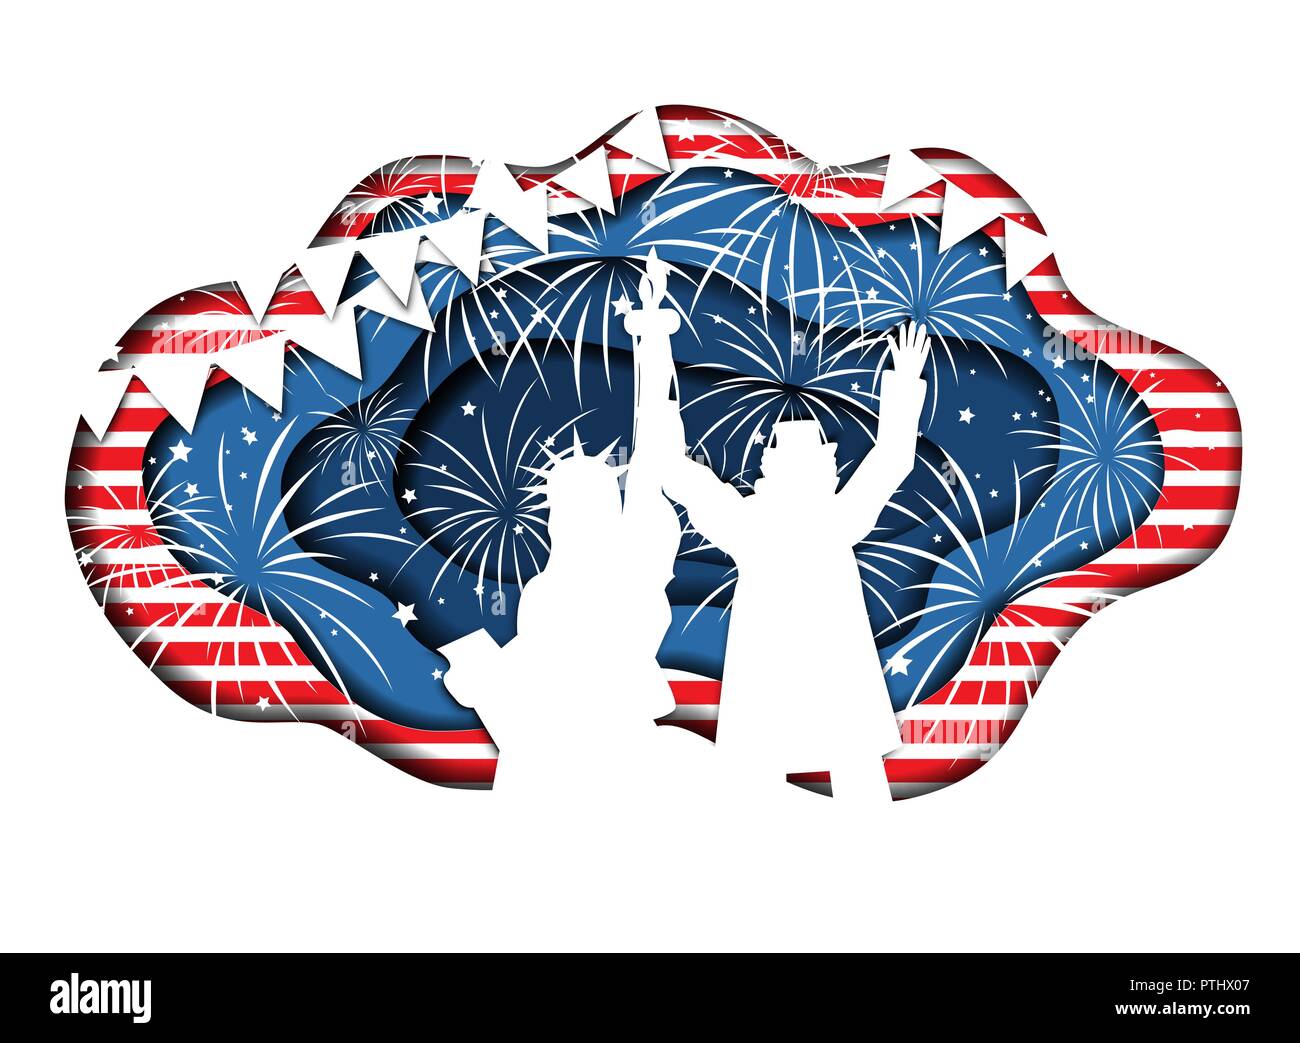 Gracioso papel cortado banner para el día de la independencia el 4 de julio, Estados Unidos con la estatua de la libertad y el Tío Sam juntos. Ilustración vectorial. Los símbolos y colores nacionales Ilustración del Vector